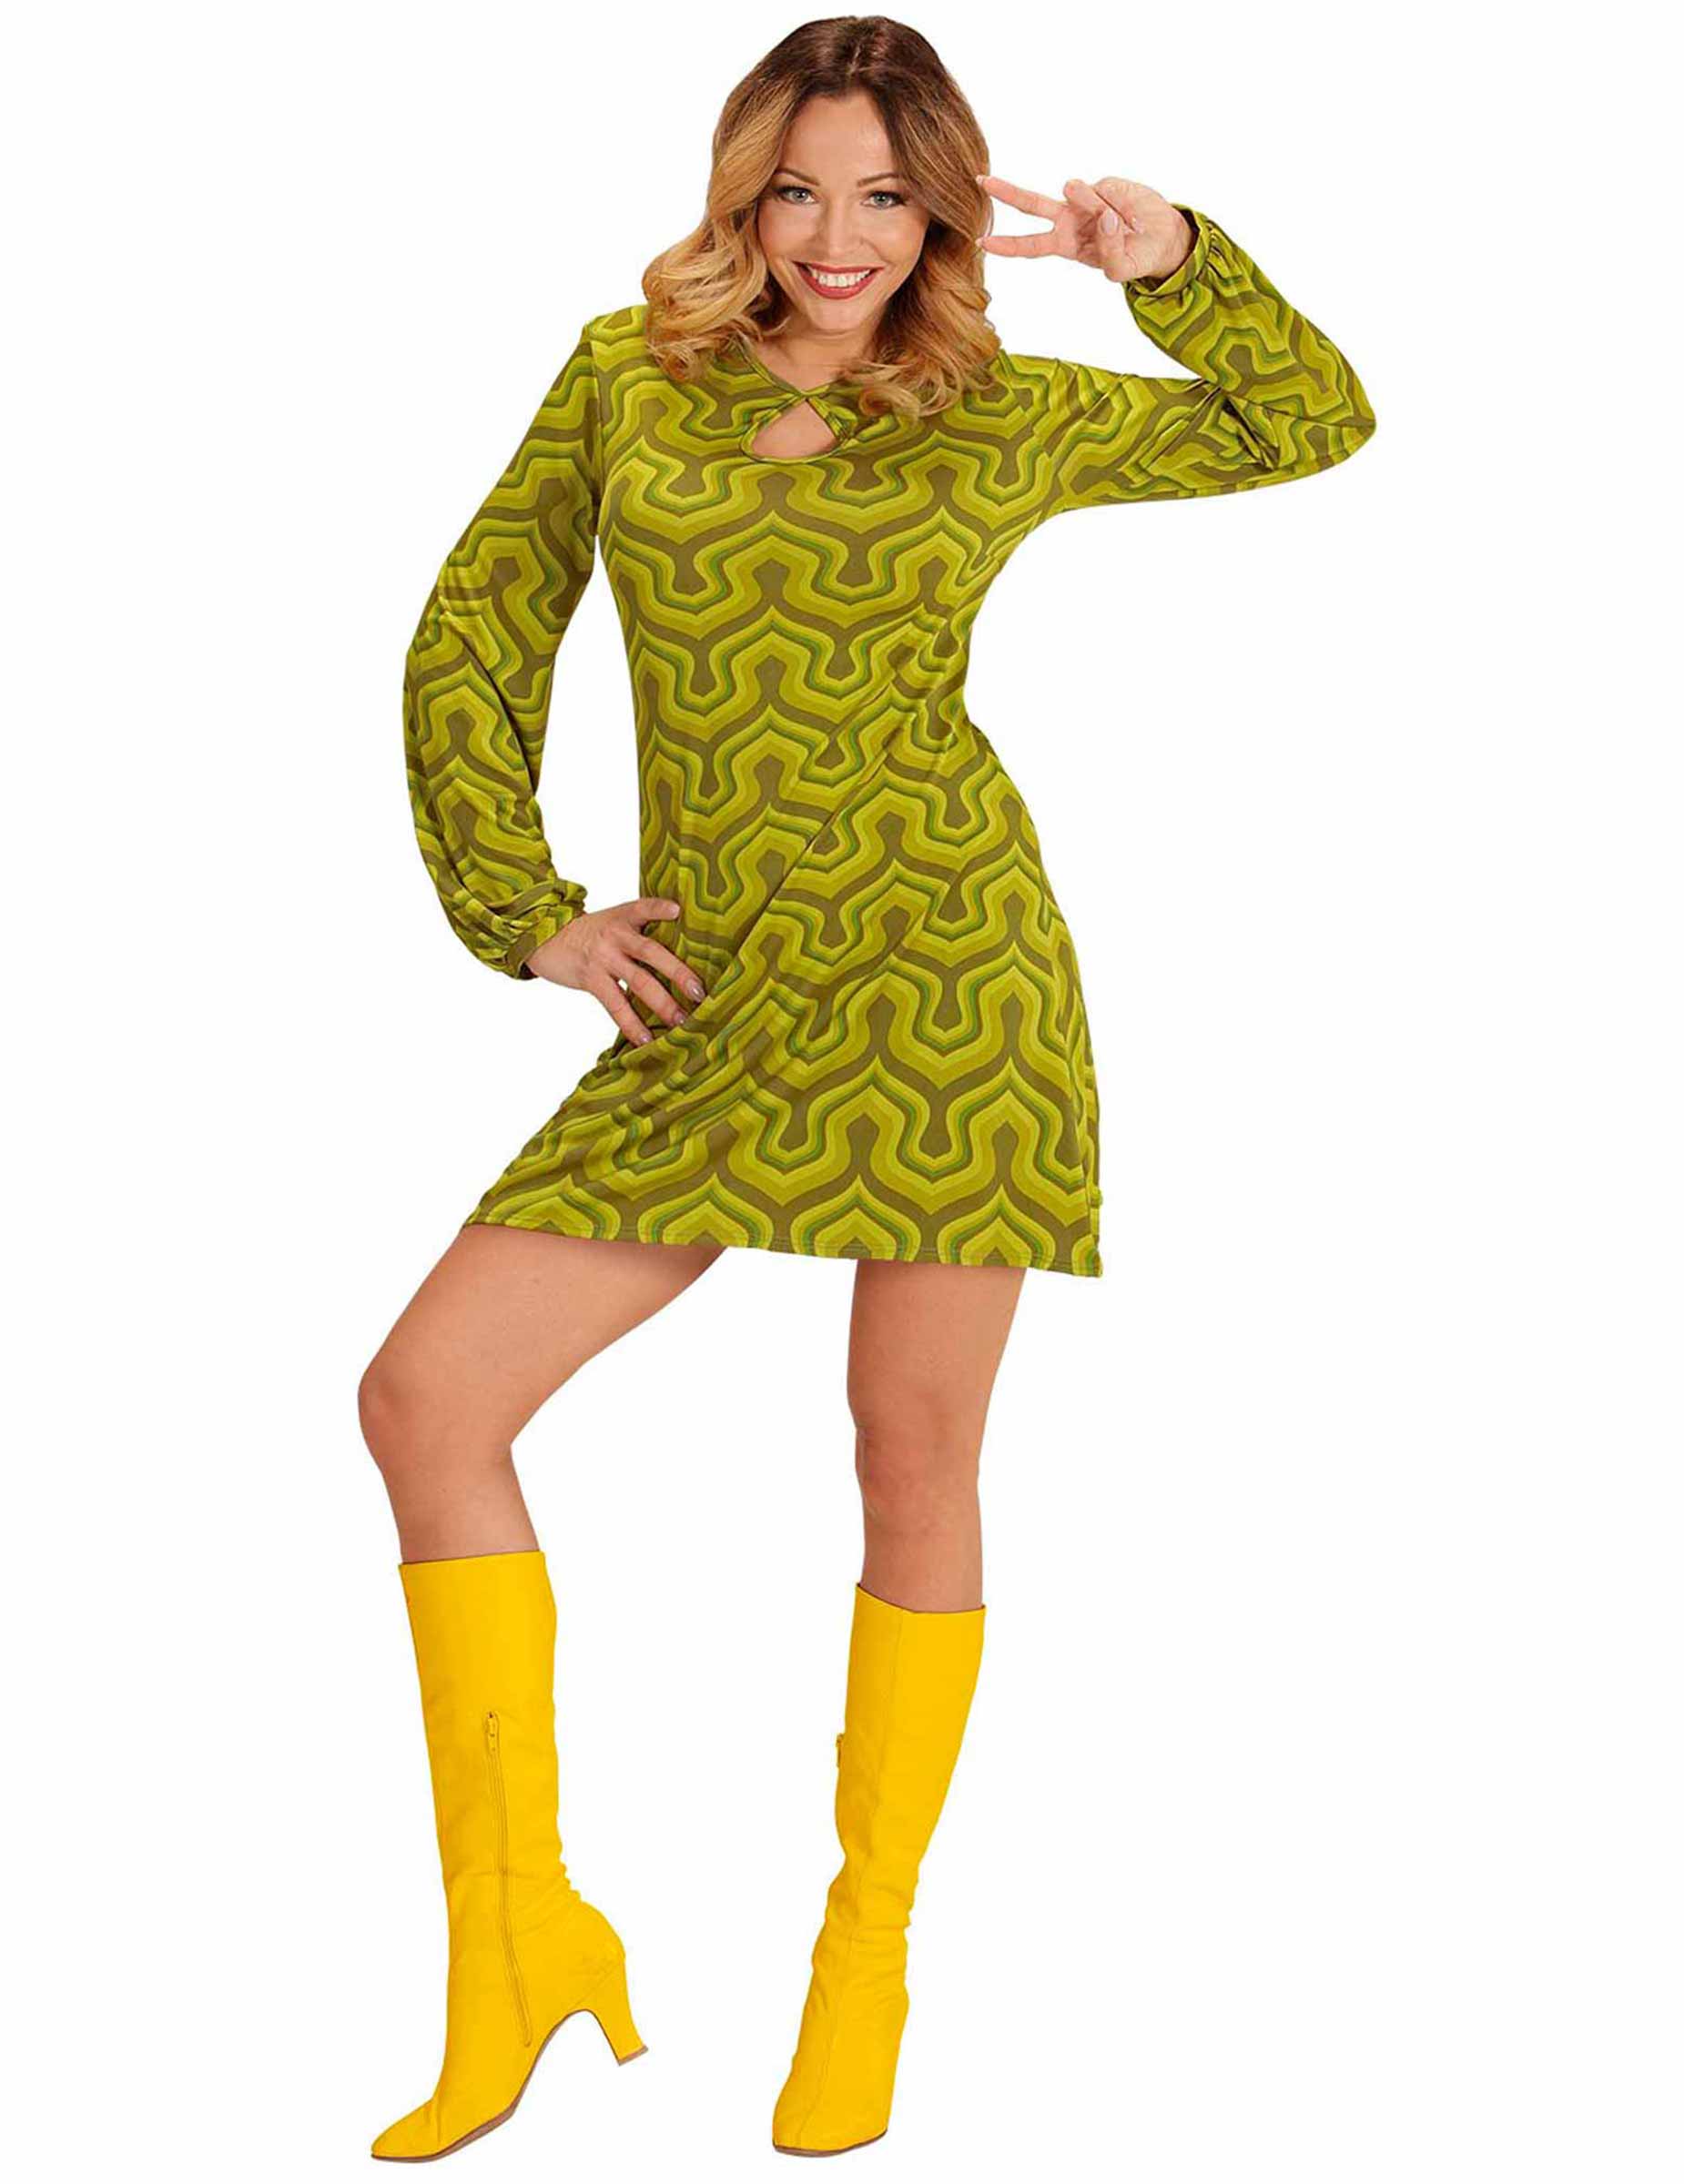 Robe Femme des Années 70 - Style Groovy - Taille au choix - Jour